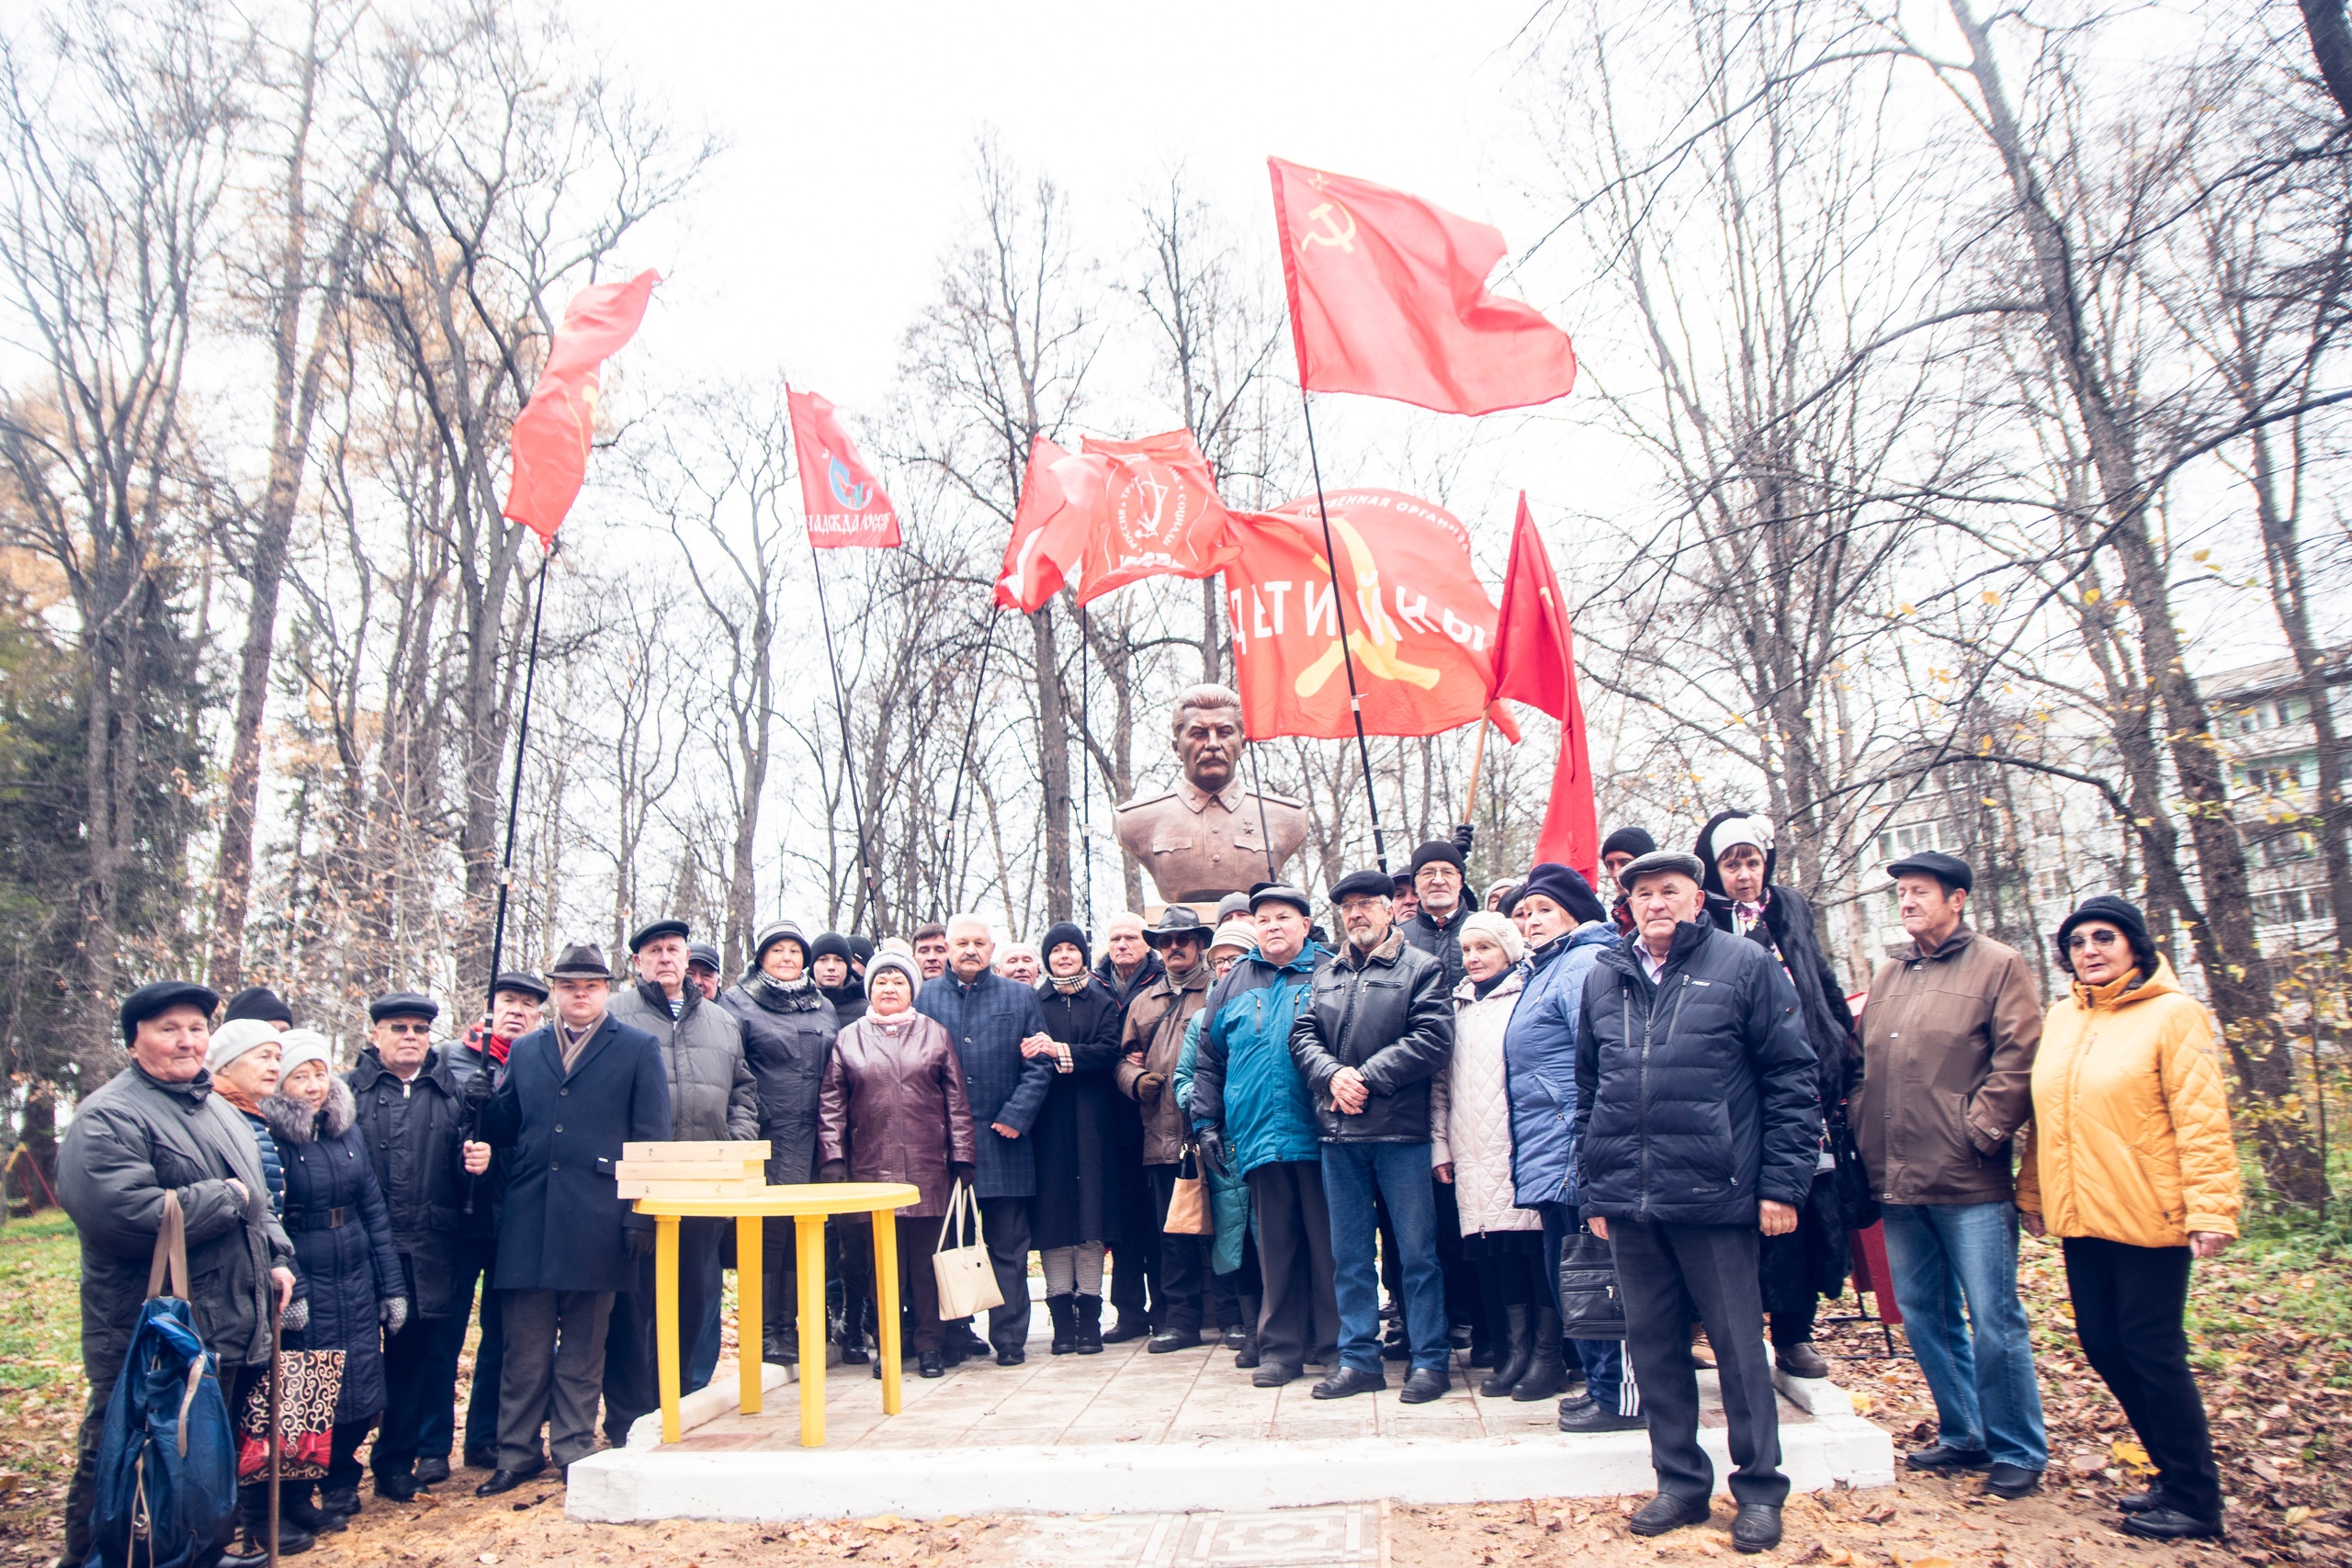 Жители Орлова пожаловались в прокуратуру из-за памятника Сталину, который установили активисты КПРФ в детском парке